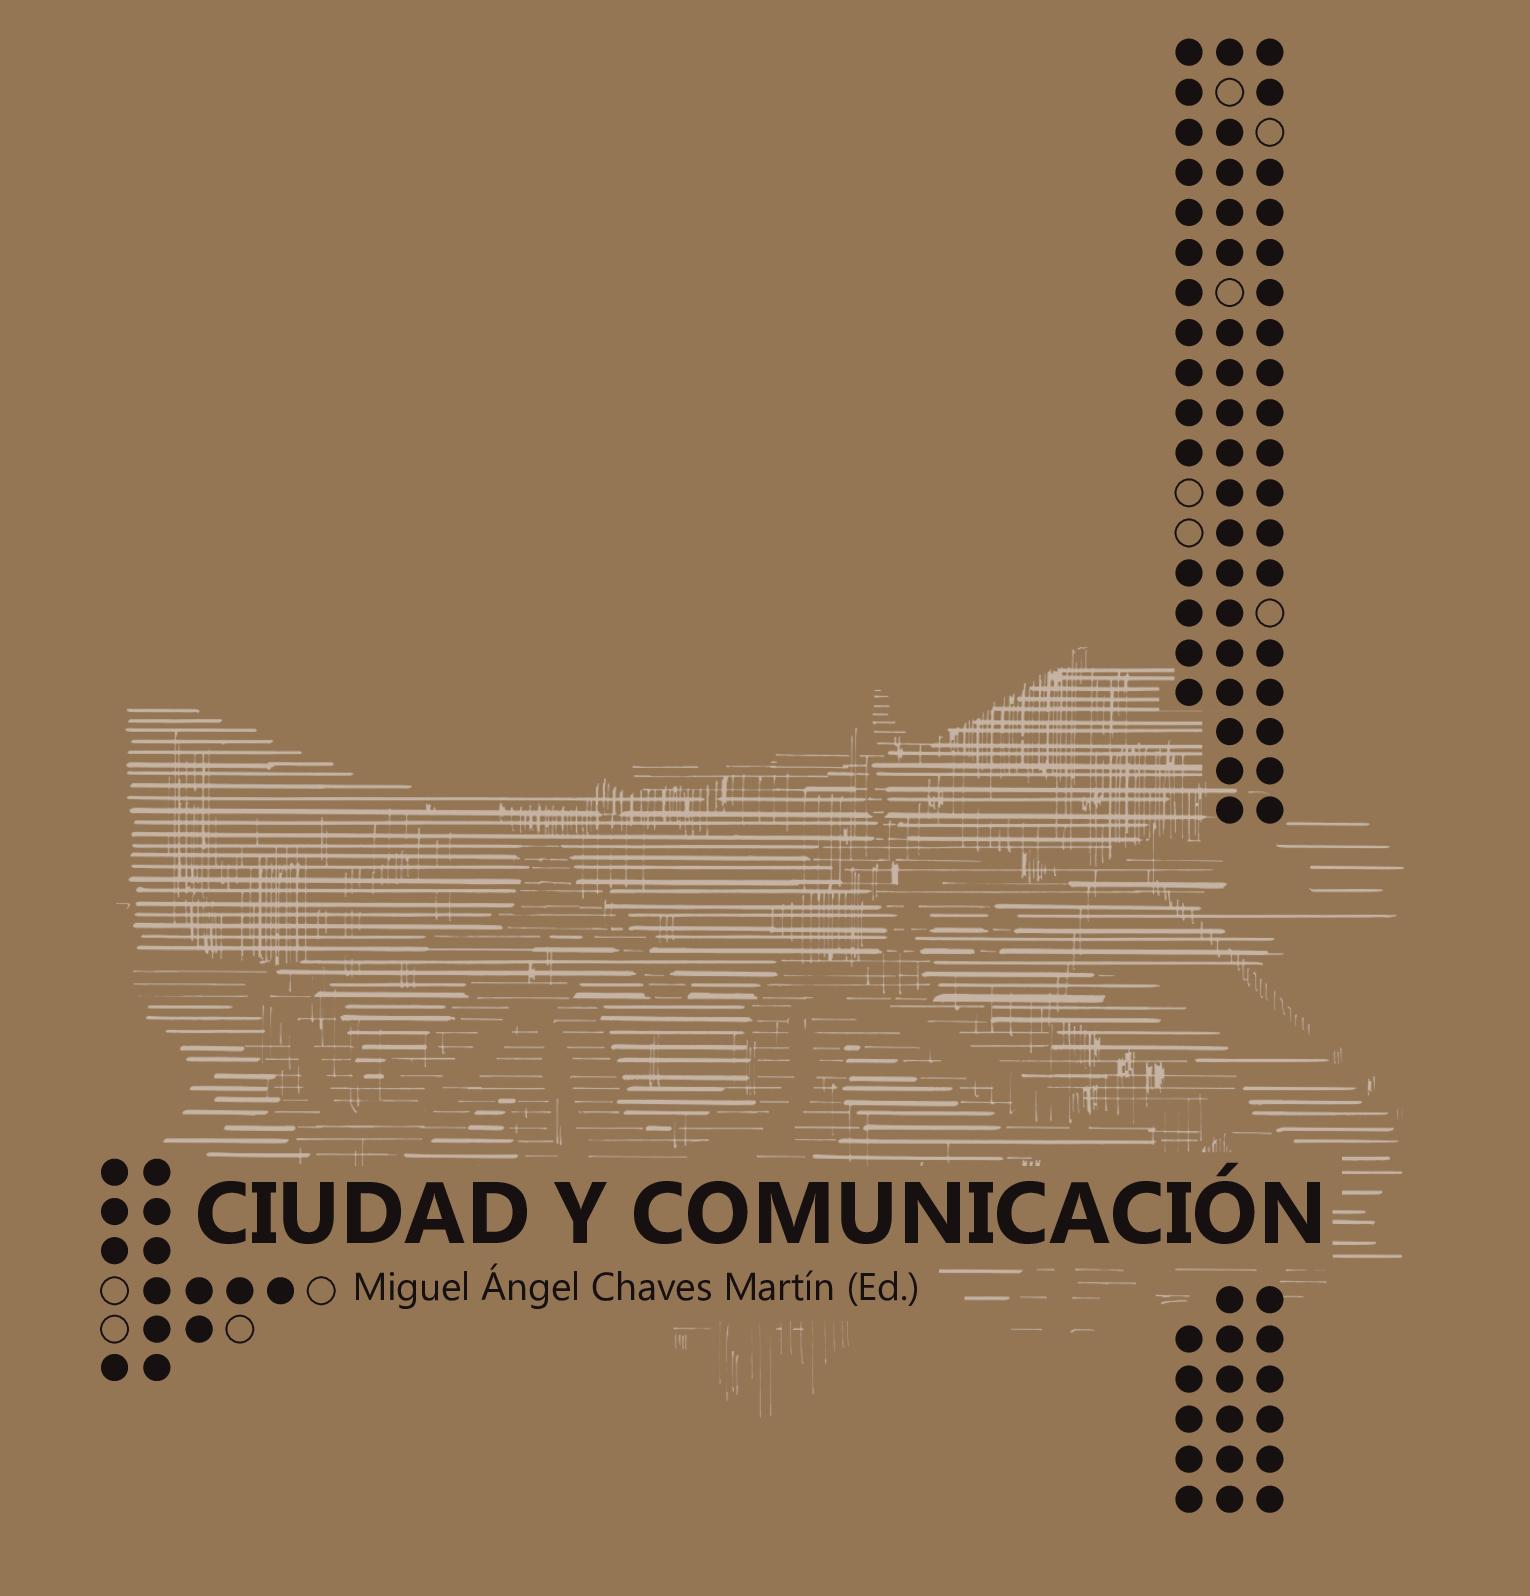 Imagen de portada del libro Ciudad y comunicación